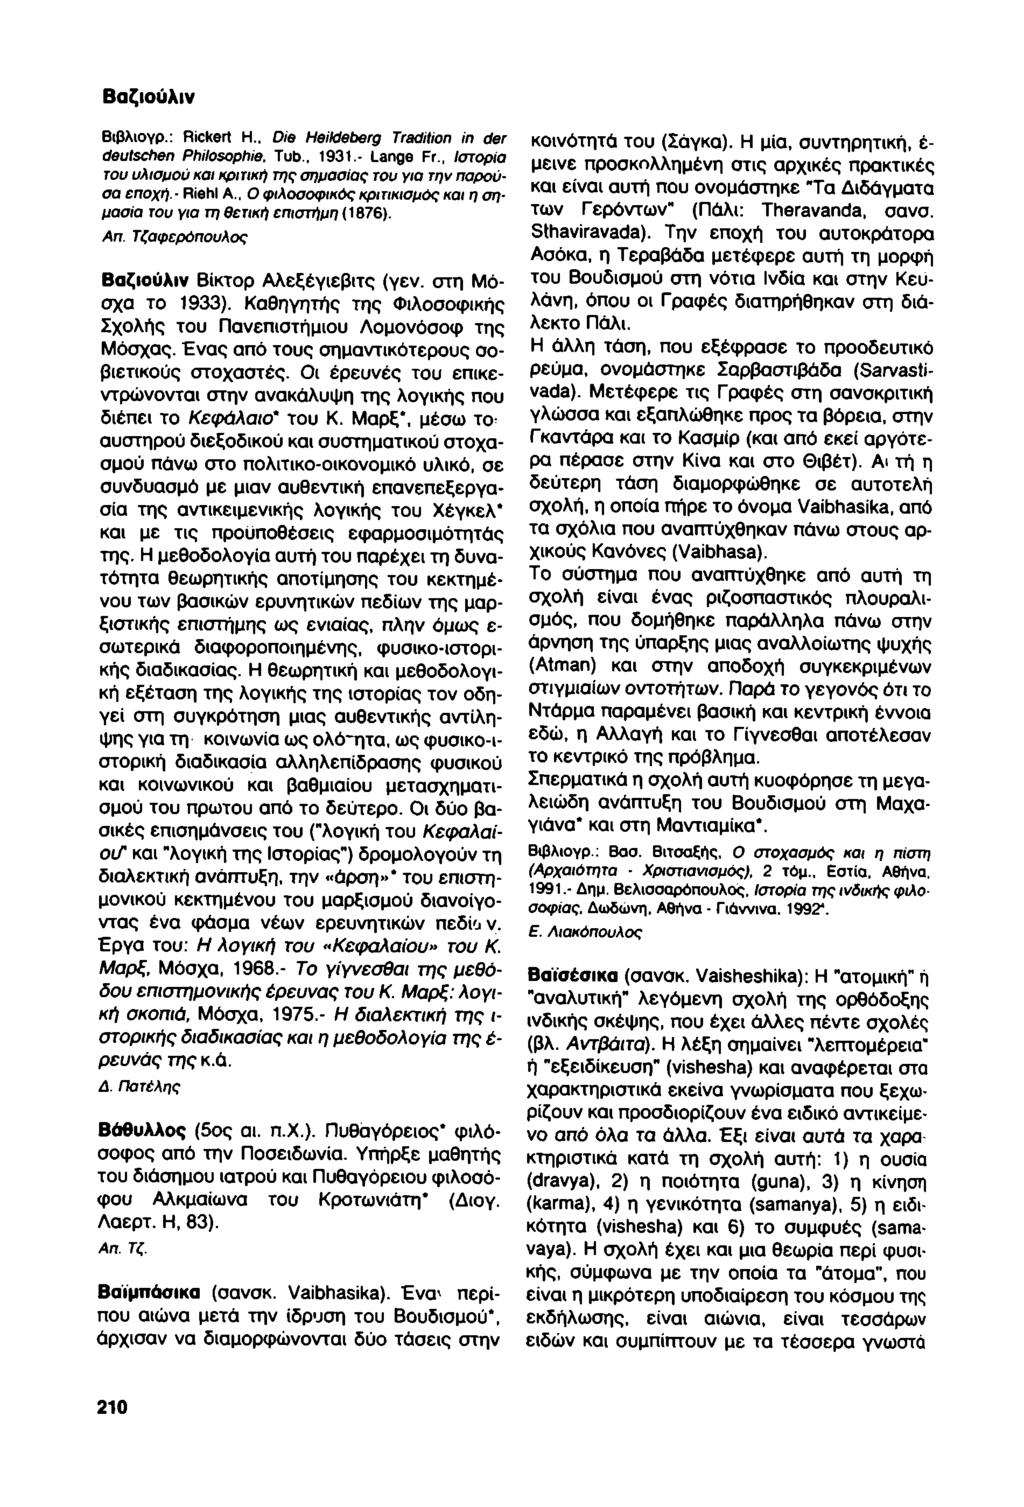 Βαζιούλιν Βιβλιογρ.: Rickert Η.. Die Heildeberg Tradition in der deutschen Philosophie. Tub., 1931.- Lange Fr., Ιστορία του υλισμού και κριτική της σημασίας του για την παρούσα εποχή.- Riehl Α.